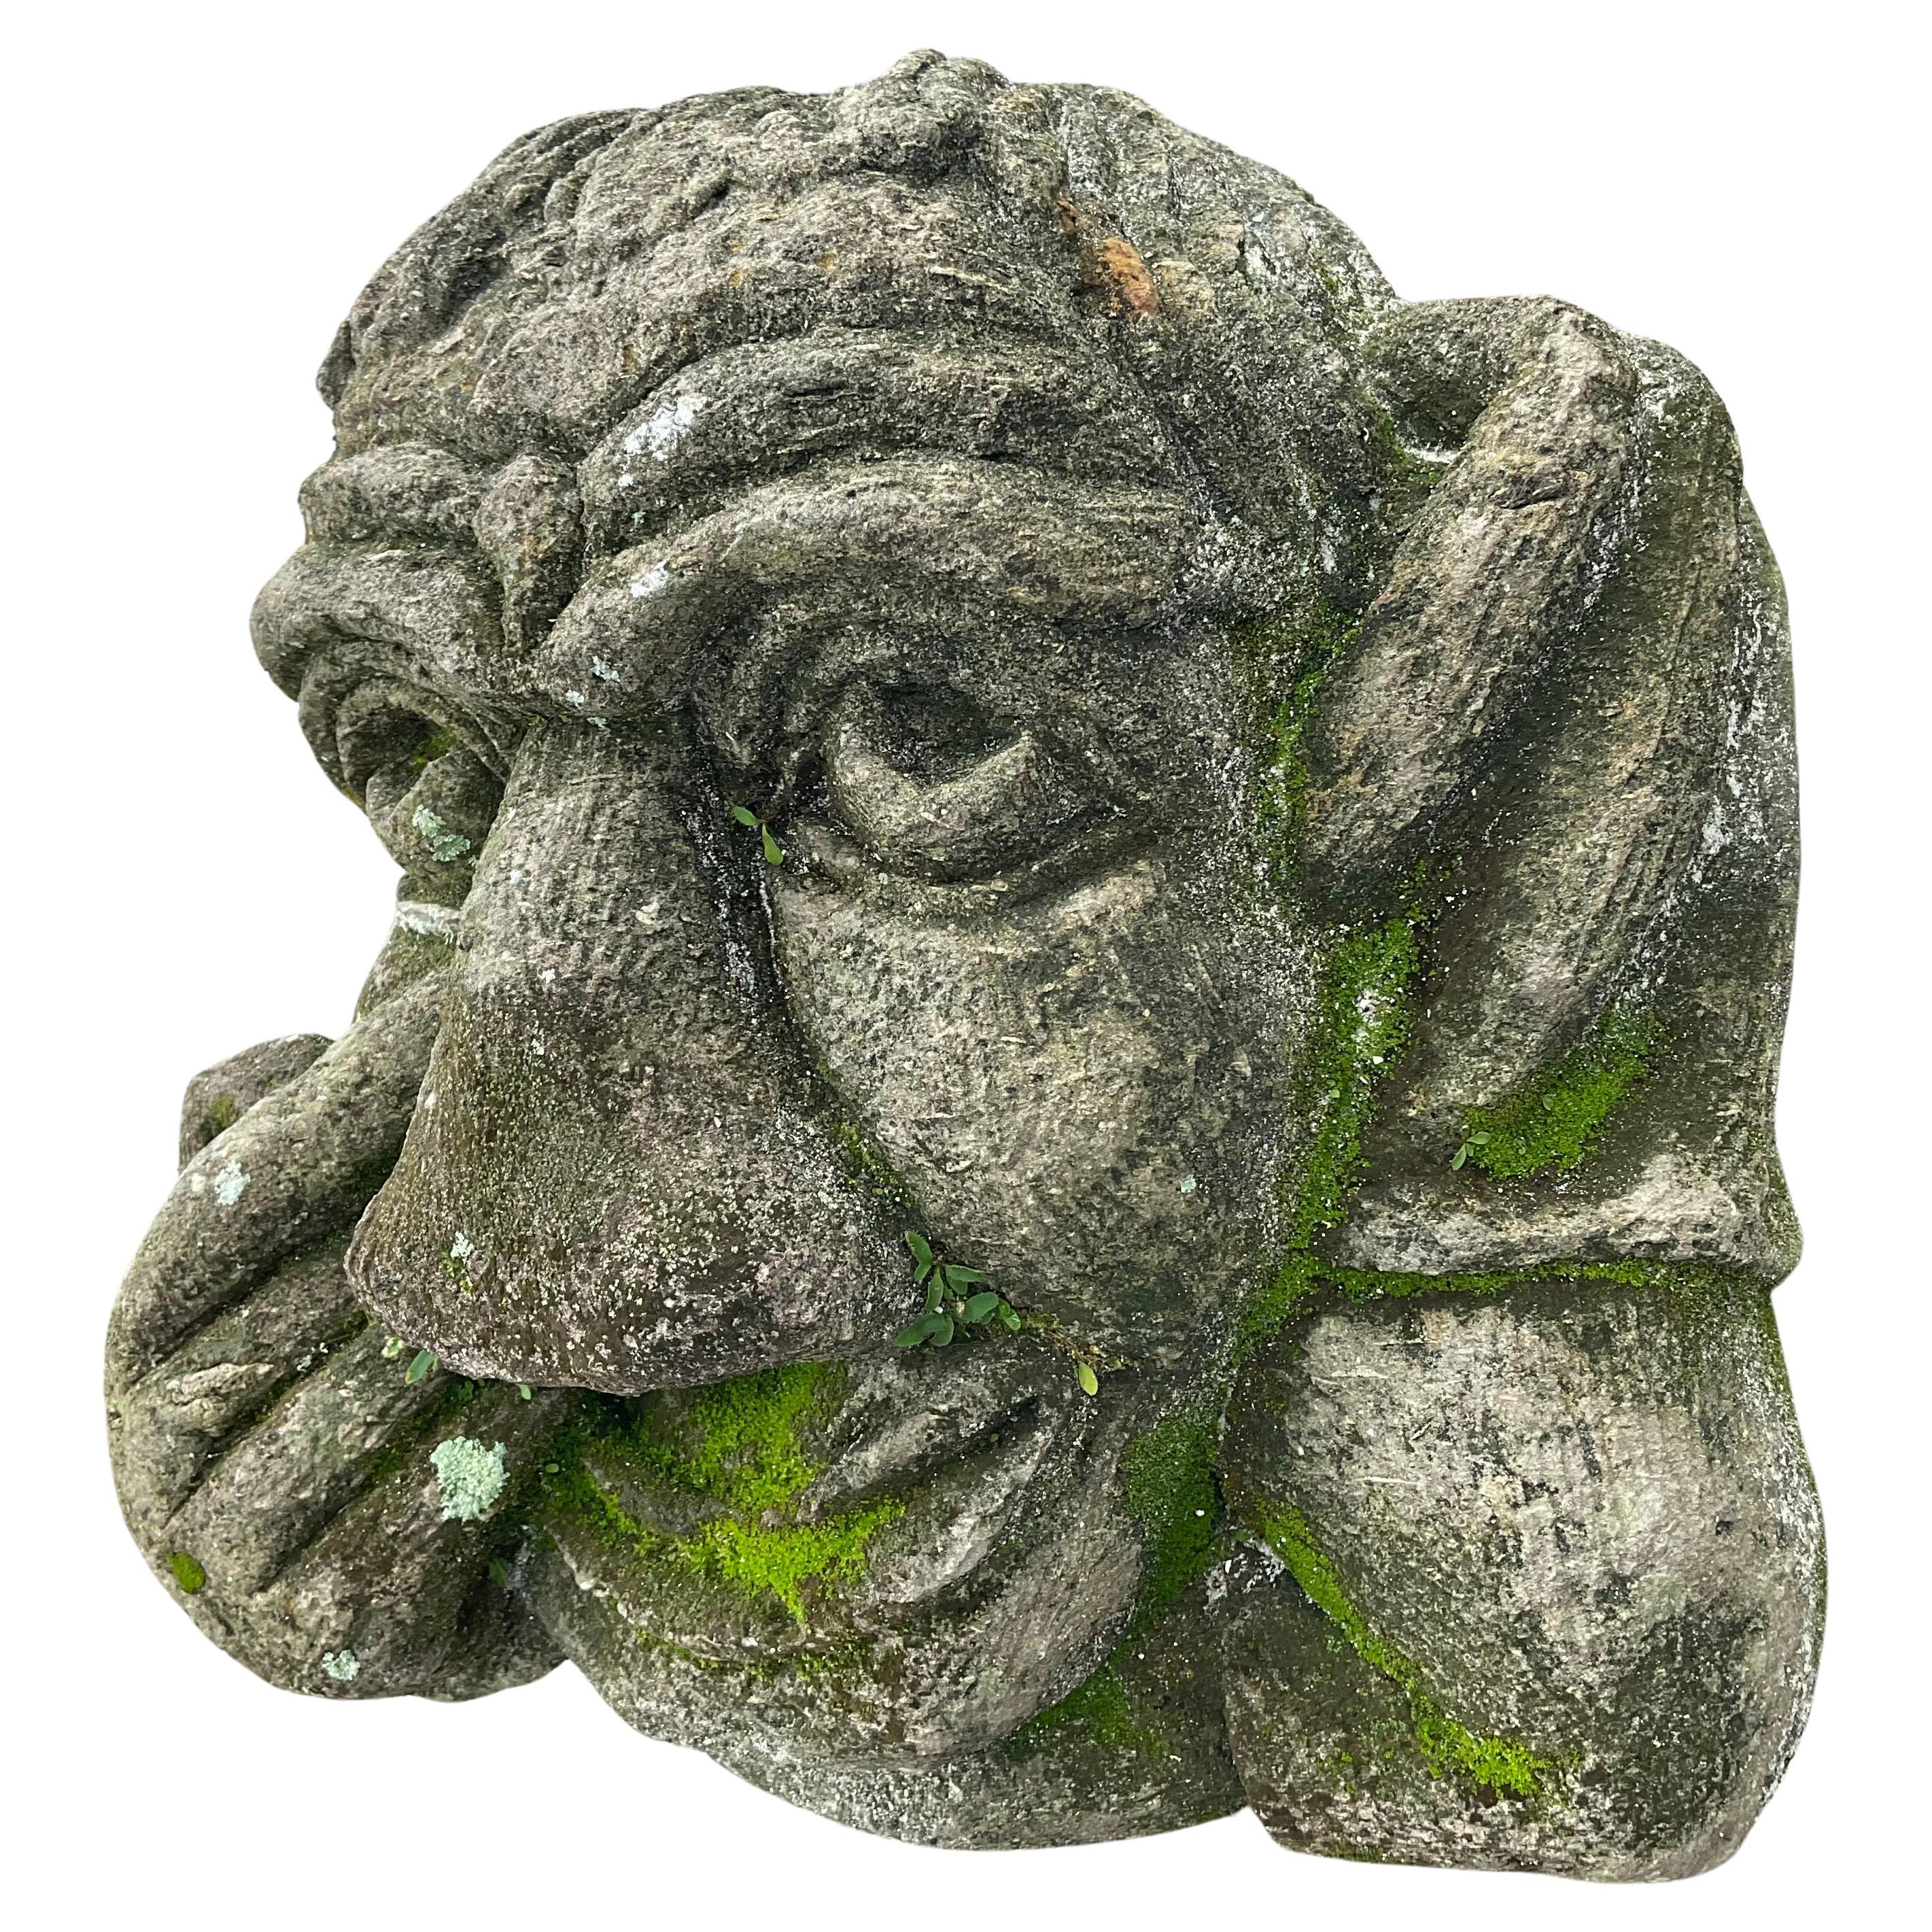 Steinkopf einer Groteske, montiert auf einem späteren gusseisernen Ständer. Die Statue hat sehr detaillierte Gesichtszüge und eine Hand berührt das rechte Auge. Wunderbare alte Patina. Sie würde in jedem Garten einzigartig und charmant aussehen.